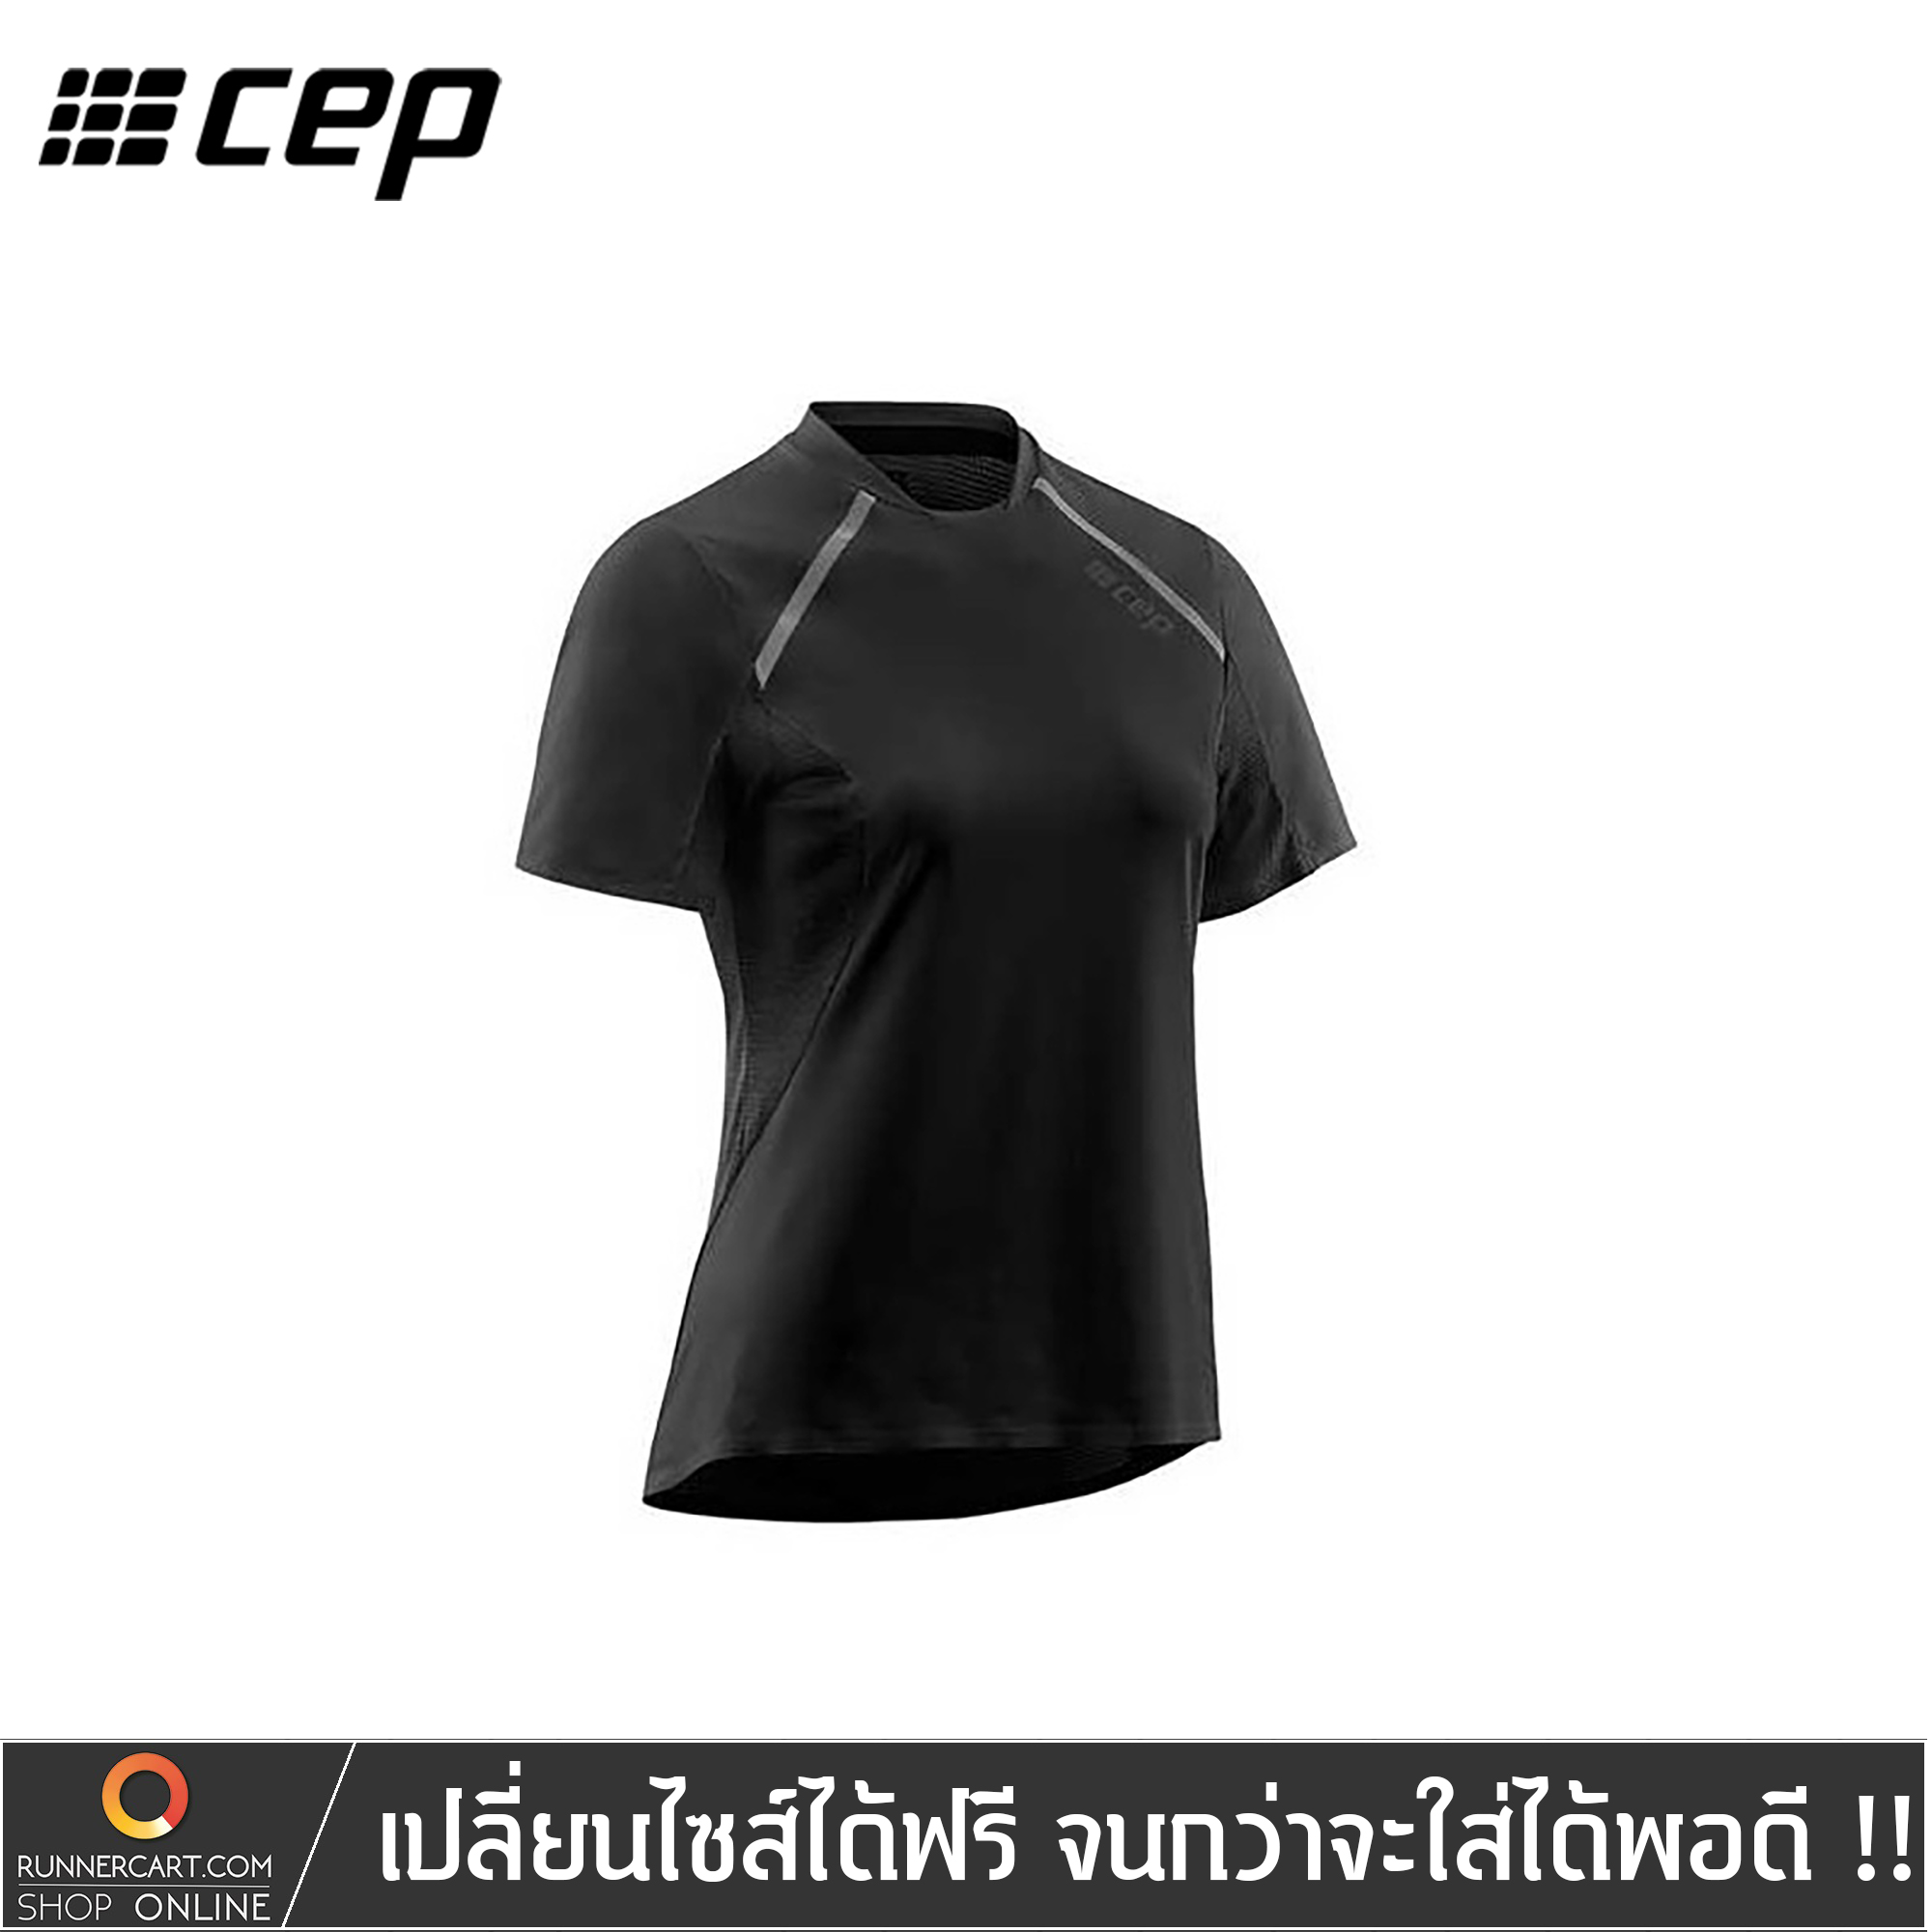 CEP Women Run Shirt Short Sleeve – RUNNERCART